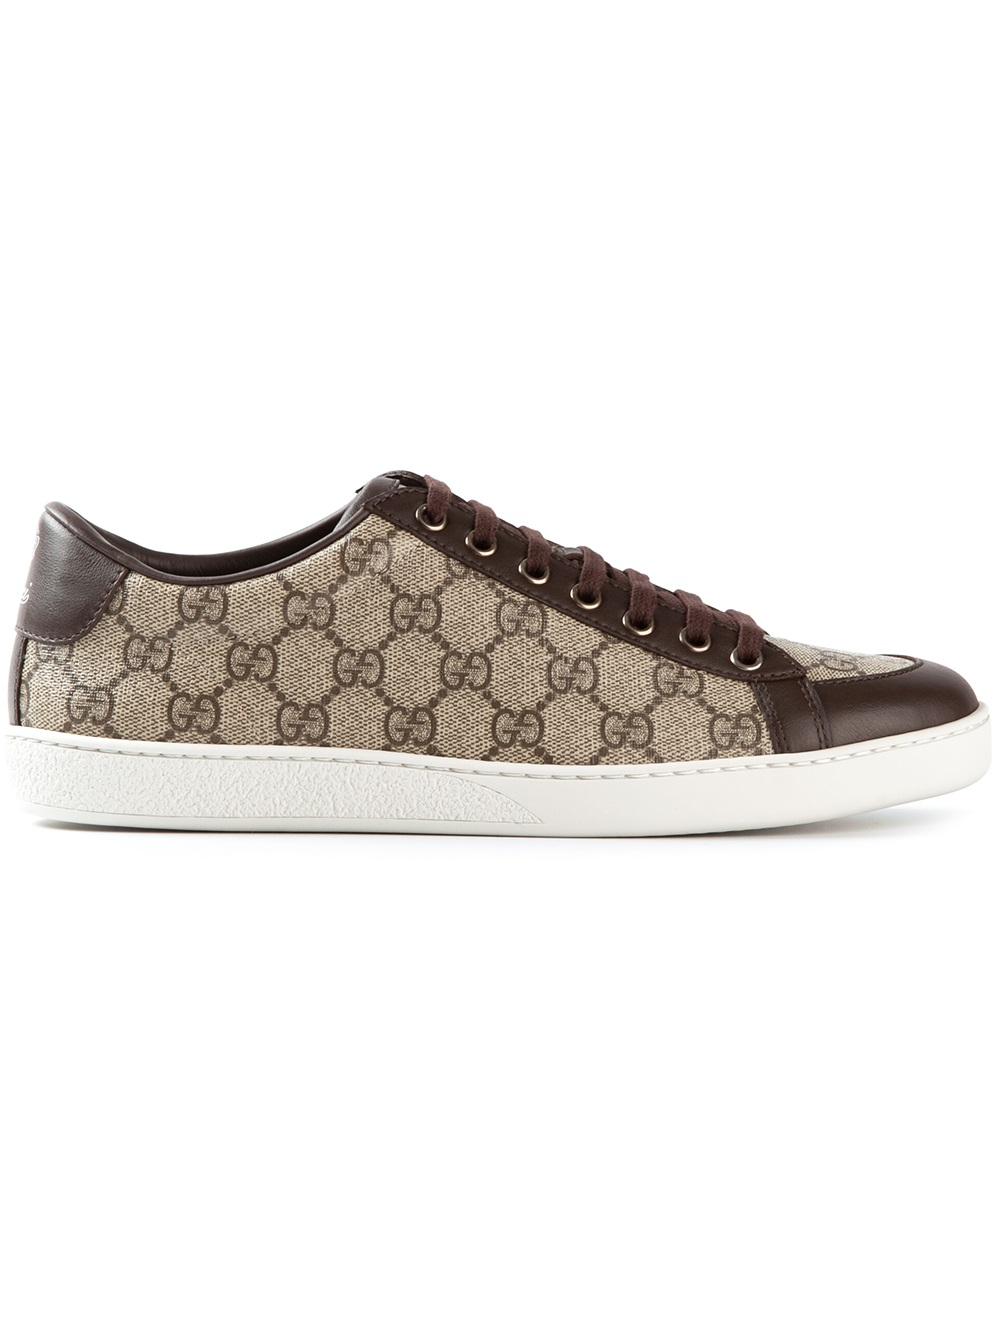 Gucci Monogram Sneakers in Brown | Lyst